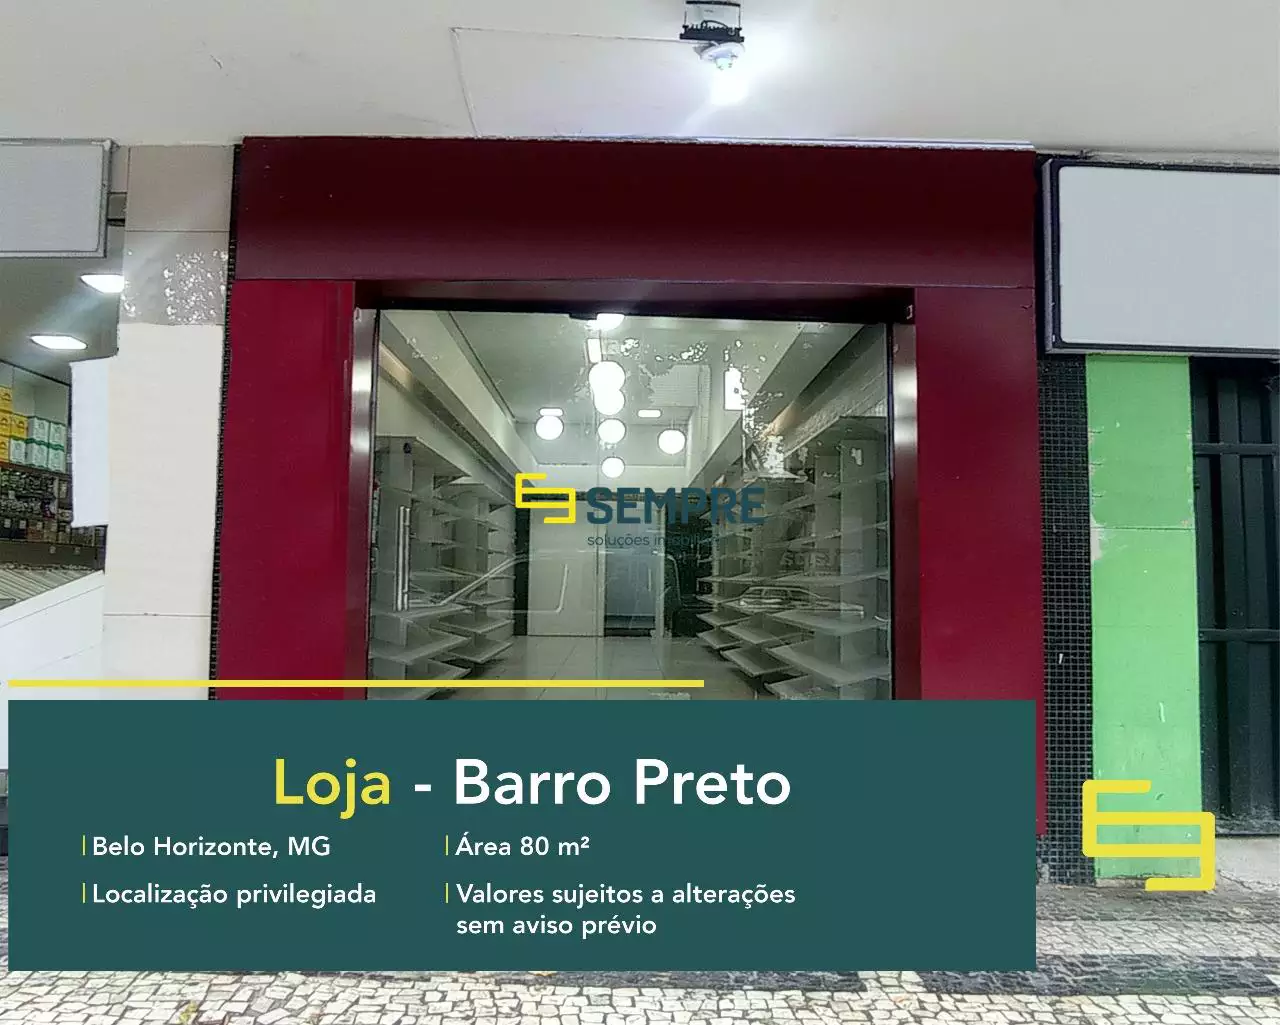 Loja no bairro Barro Preto para alugar em Belo Horizonte, excelente localização. O estabelecimento comercial conta com área de 80 m².